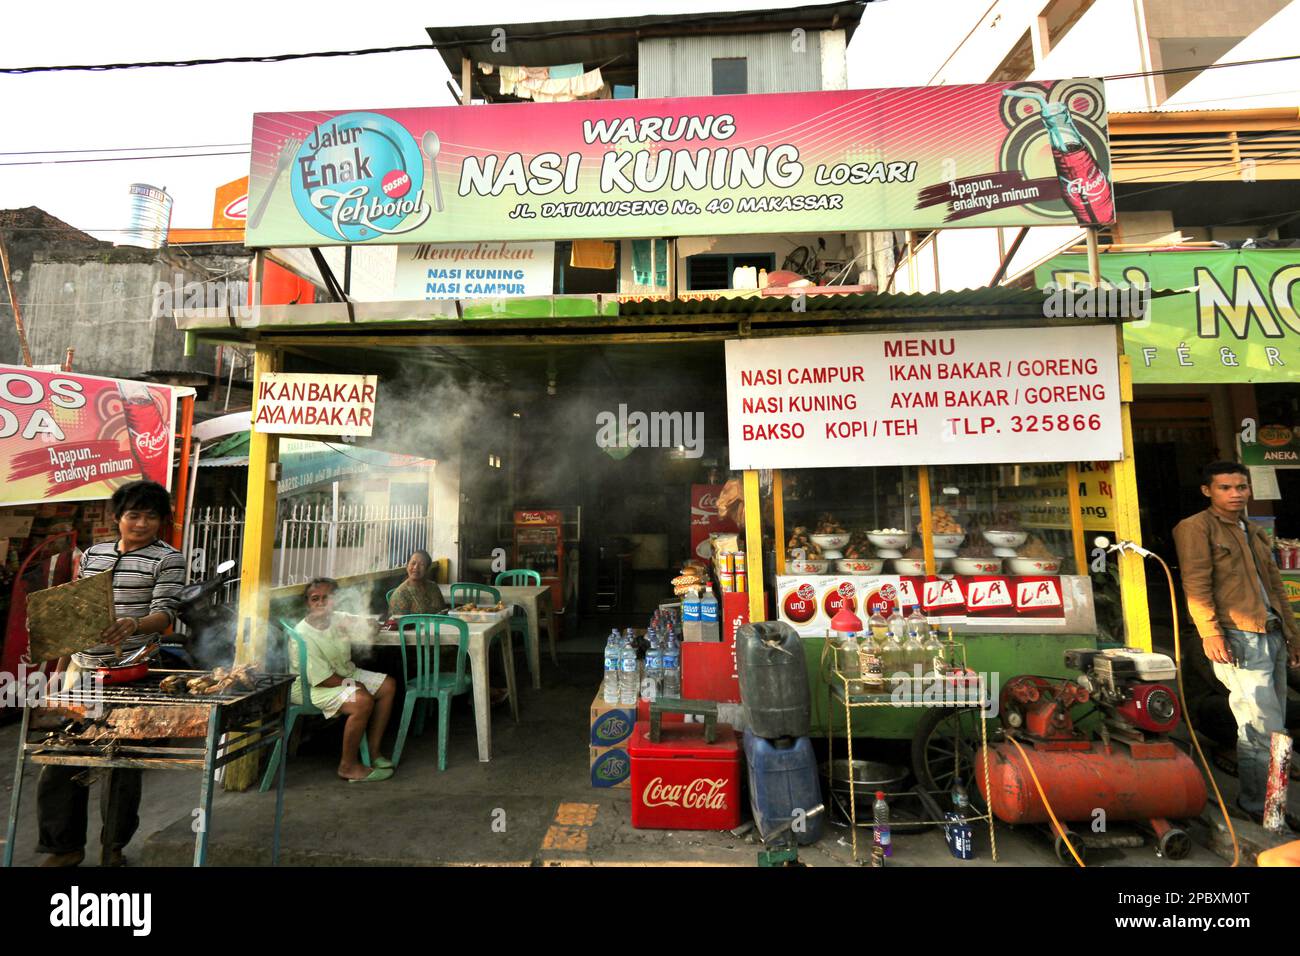 Une scène sur le côté de la rue Datu Museng (Museng), une localité avec des vendeurs culinaires - certains sont traditionnels - située près de la zone côtière de la ville de Makassar, au sud de Sulawesi, en Indonésie. L'une des 30 villes côtières d'Indonésie qui, selon les estimations, pourraient être touchées par l'élévation du niveau de la mer, Makassar a été considérée par les chercheurs et les scientifiques comme une ville ayant des problèmes environnementaux et sociaux importants, principalement en raison de la condition géomorphologique et de la politique d'utilisation des terres et de développement côtier, en particulier des projets de remise en état actuellement menés. Banque D'Images